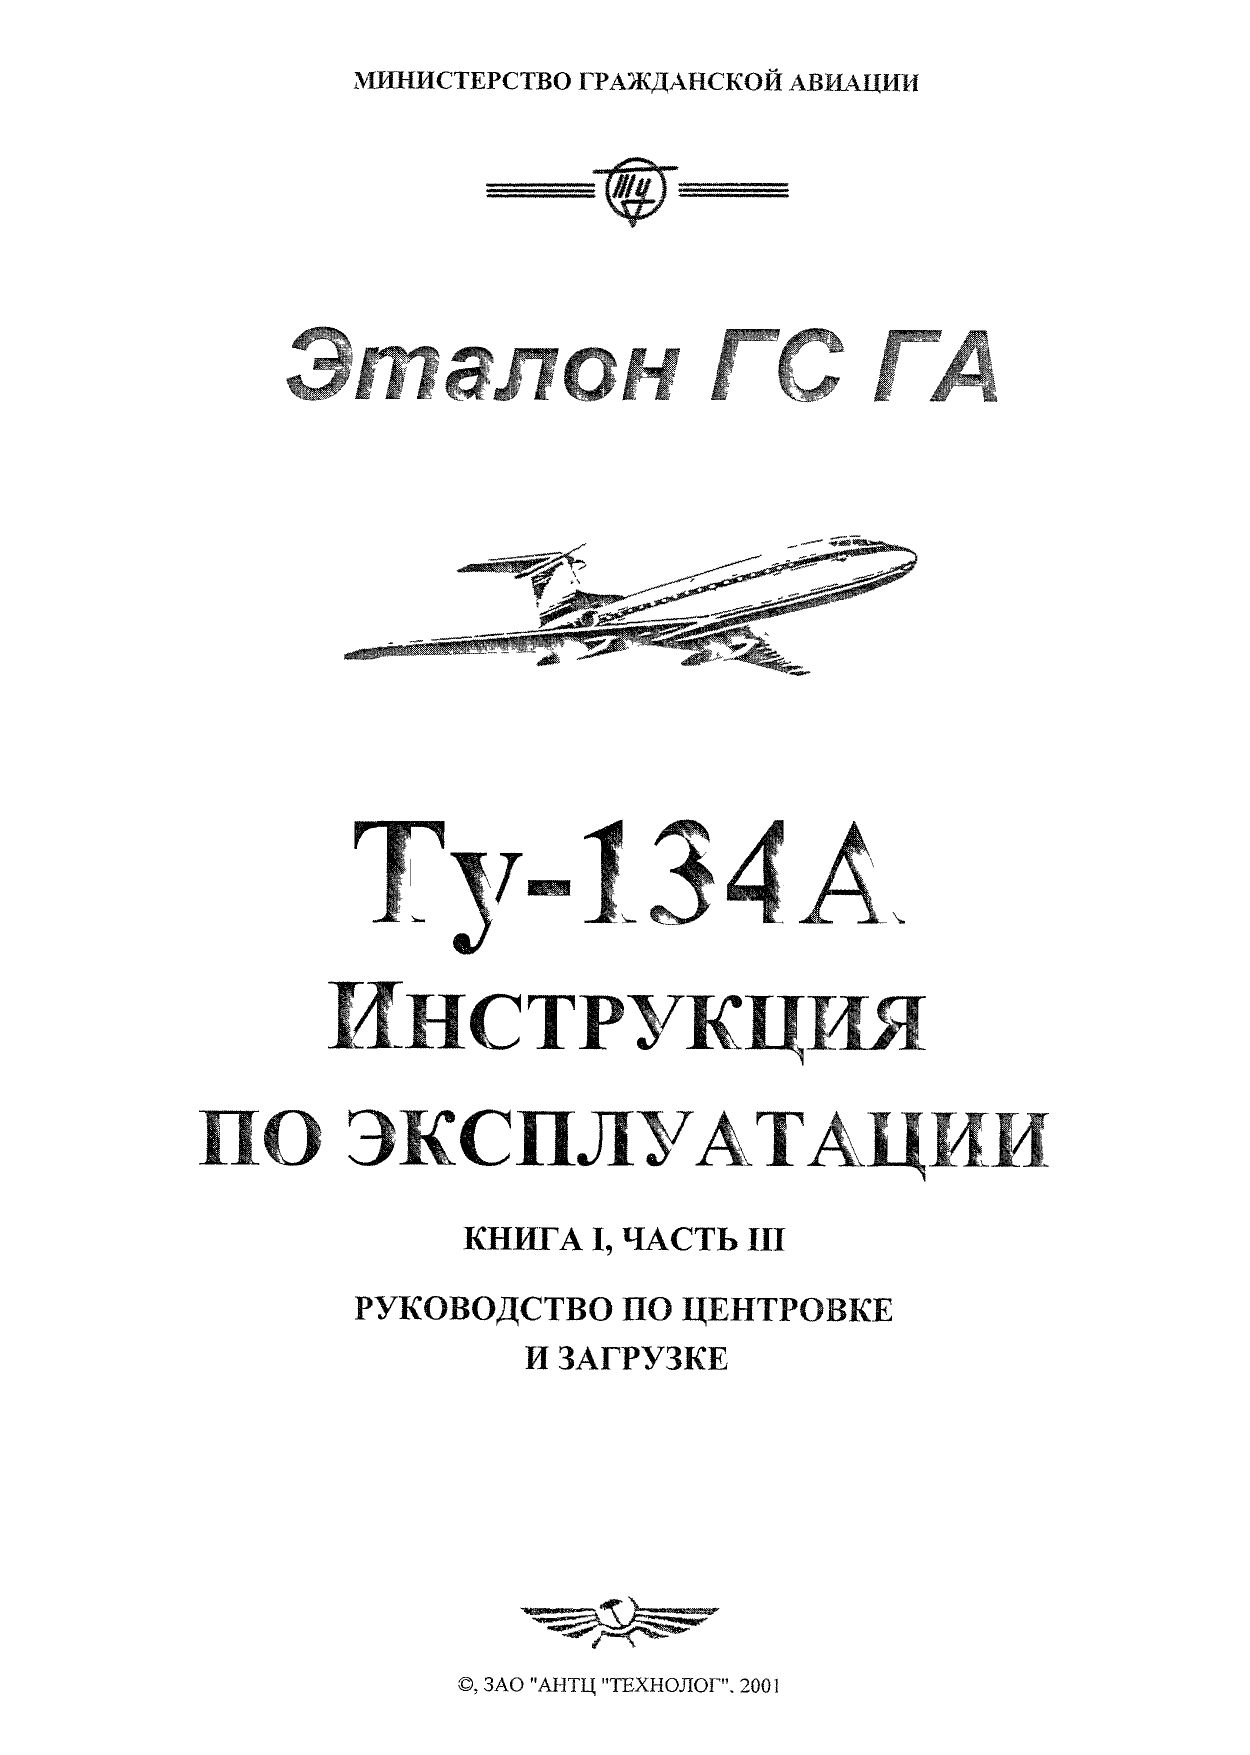 Tu-134_IYE_kn1_ch3_001